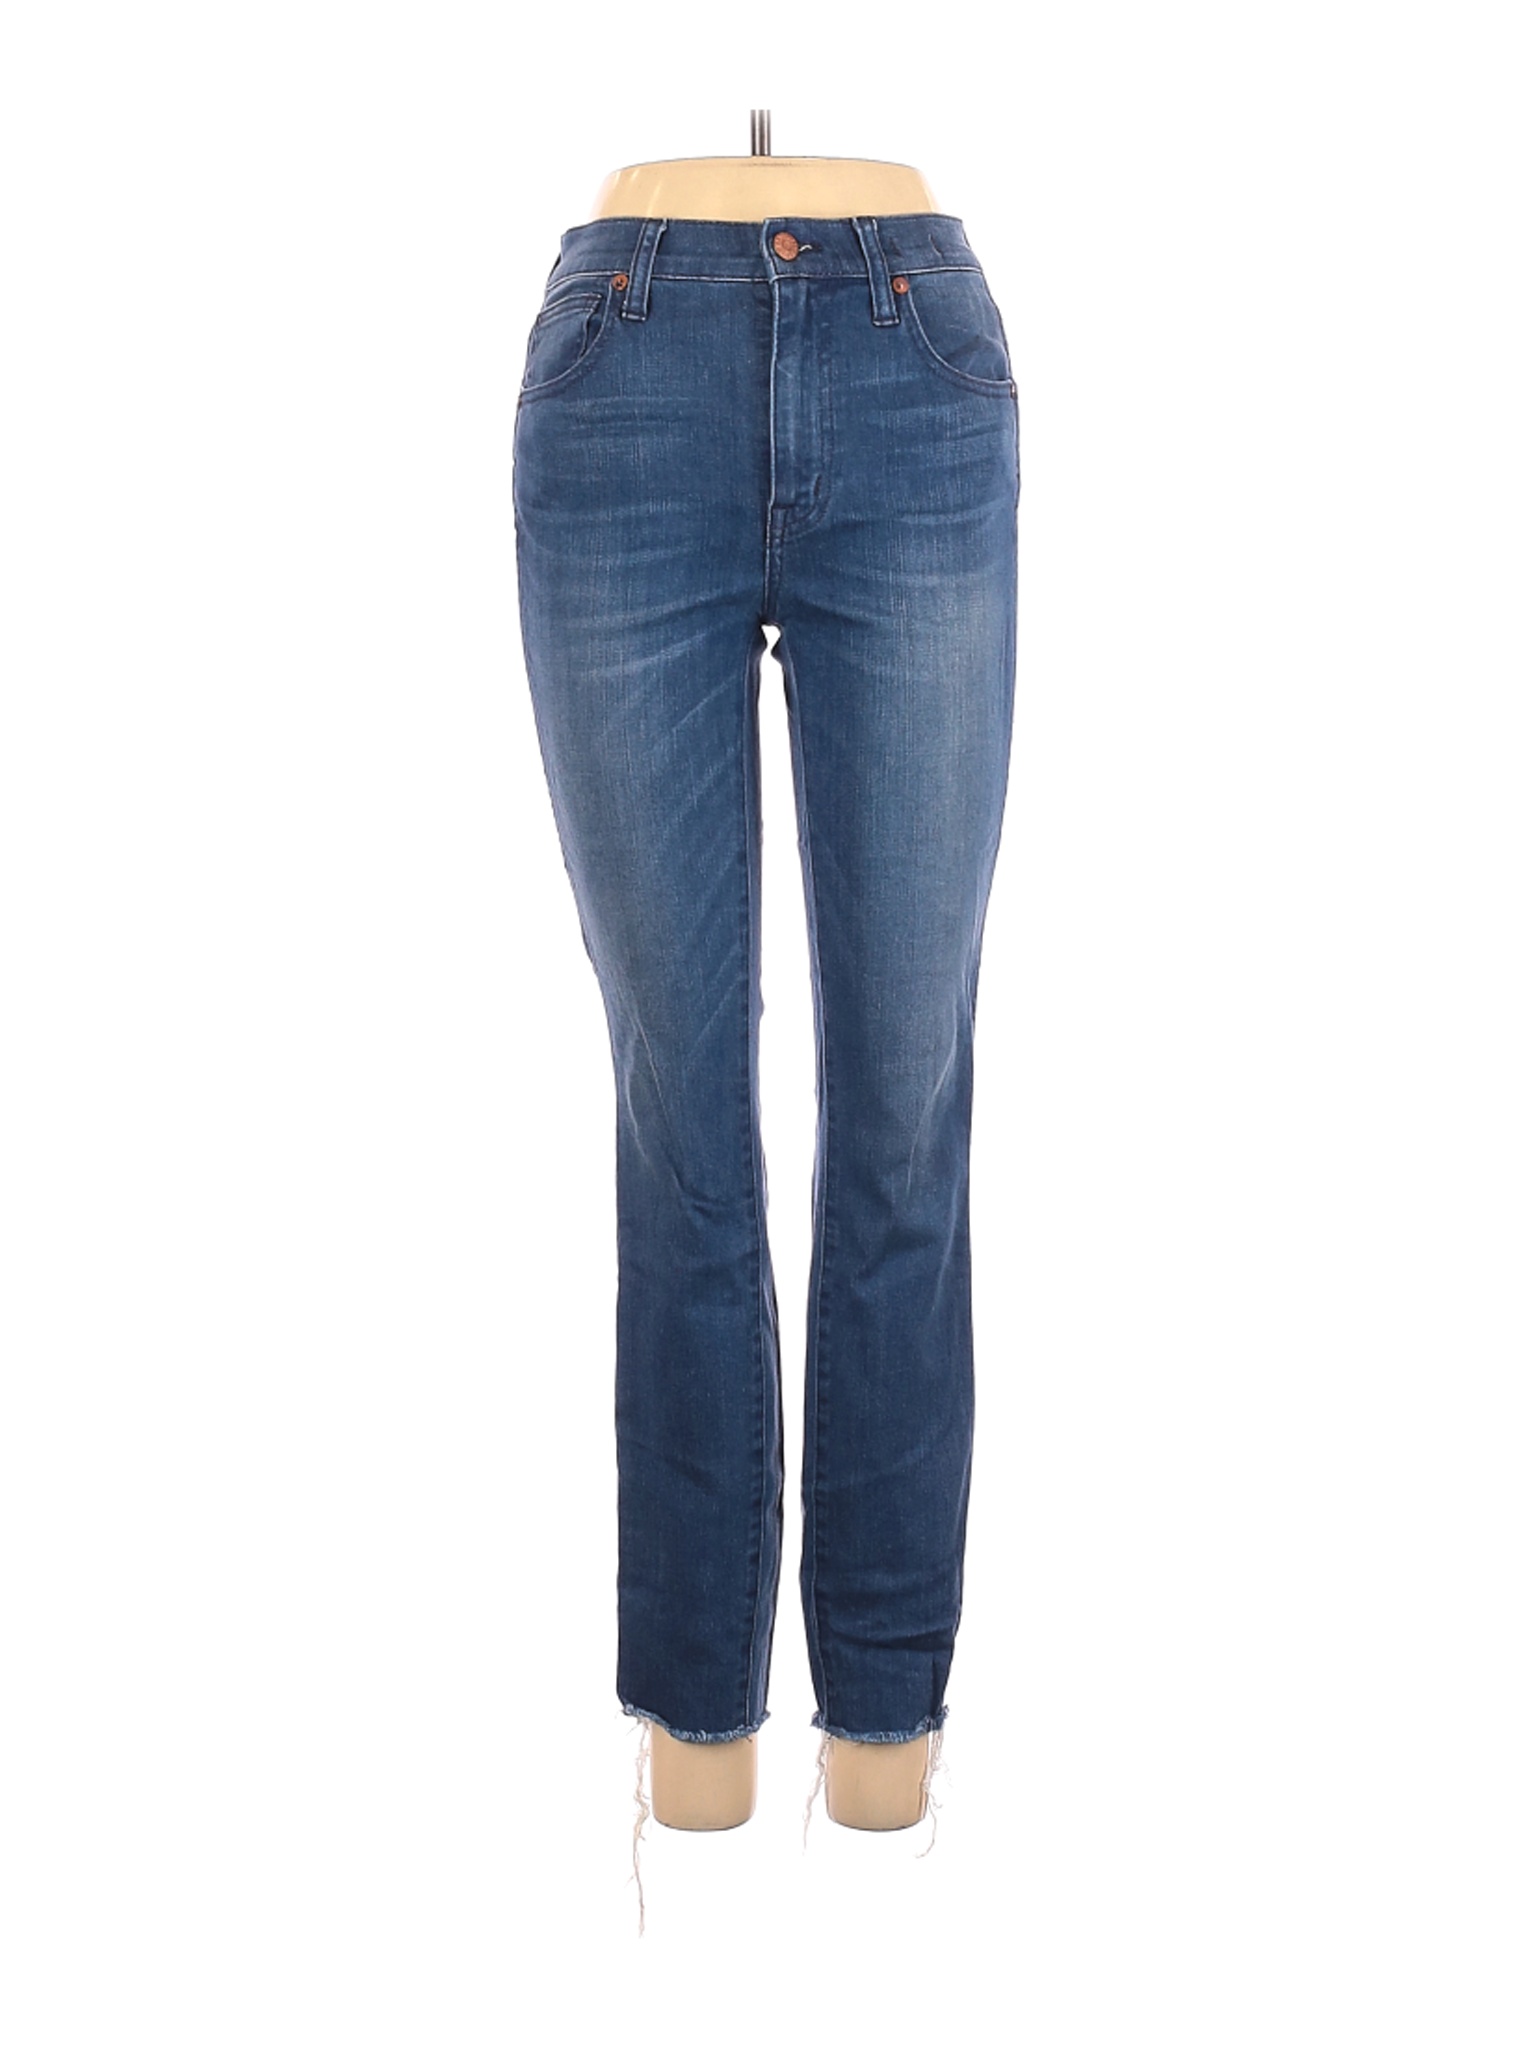 Madewell Women Blue Jeans 26W | eBay